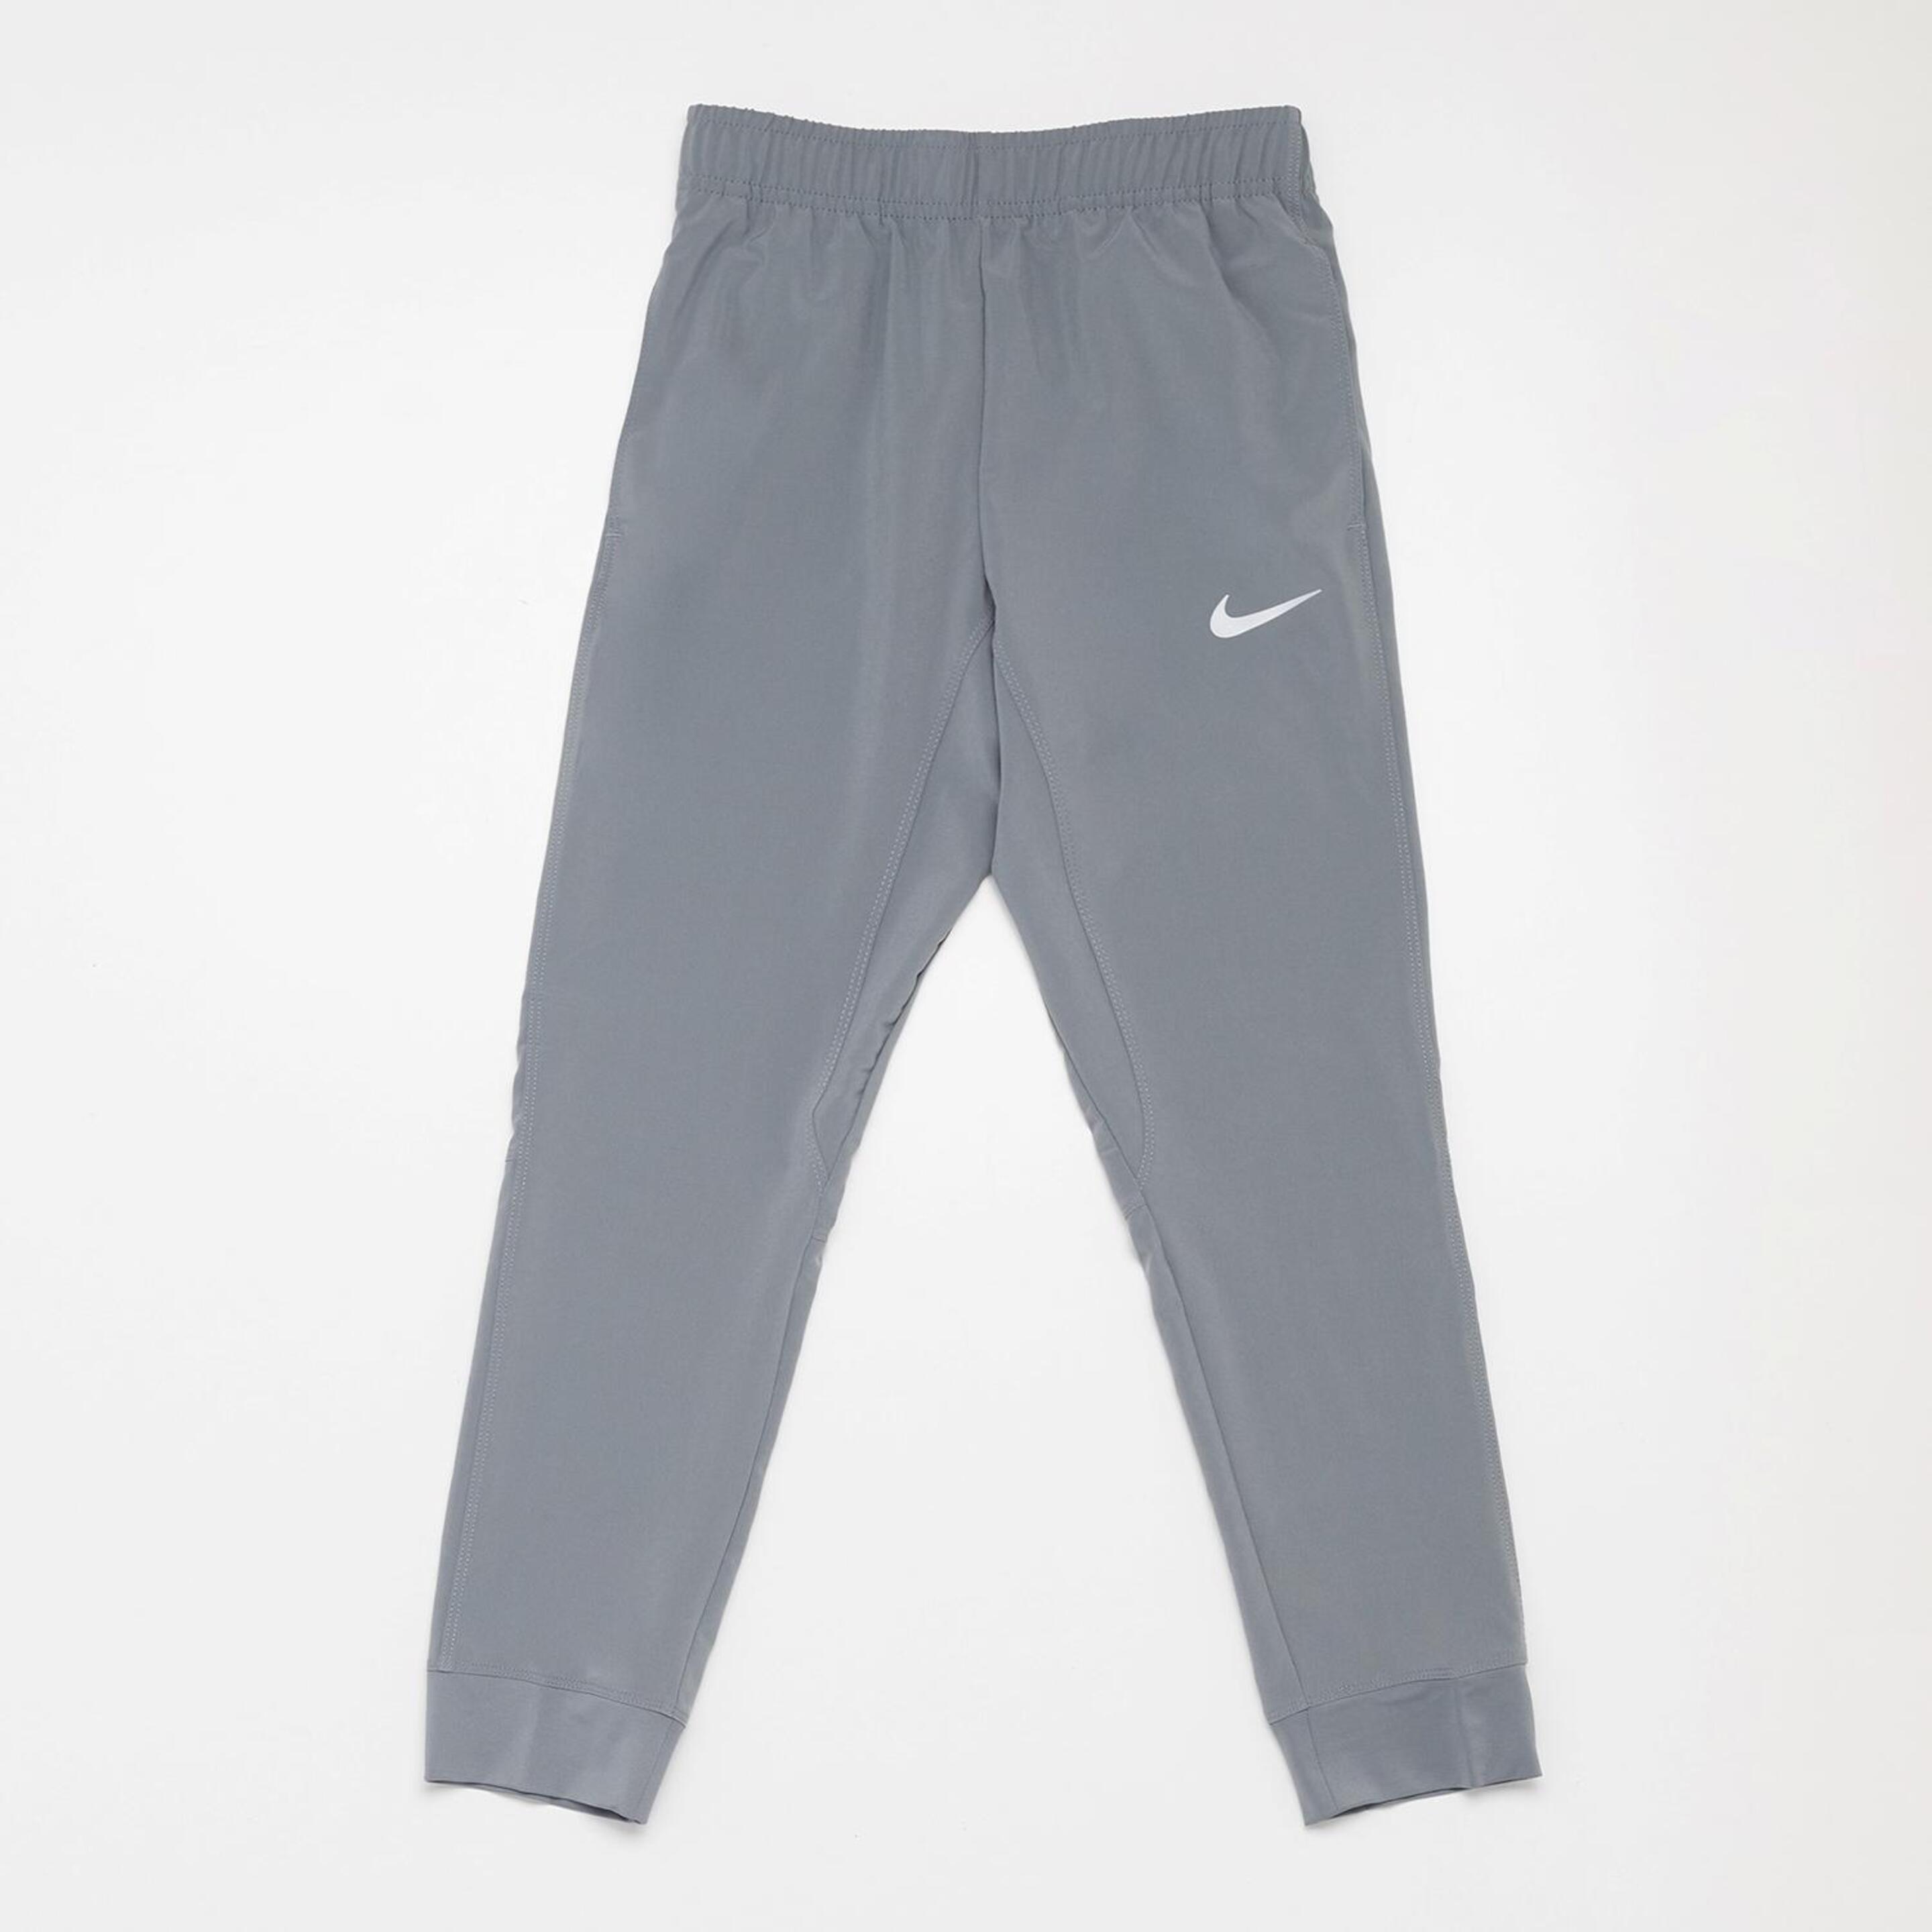 Nike Woven - gris - Calças Running Rapaz